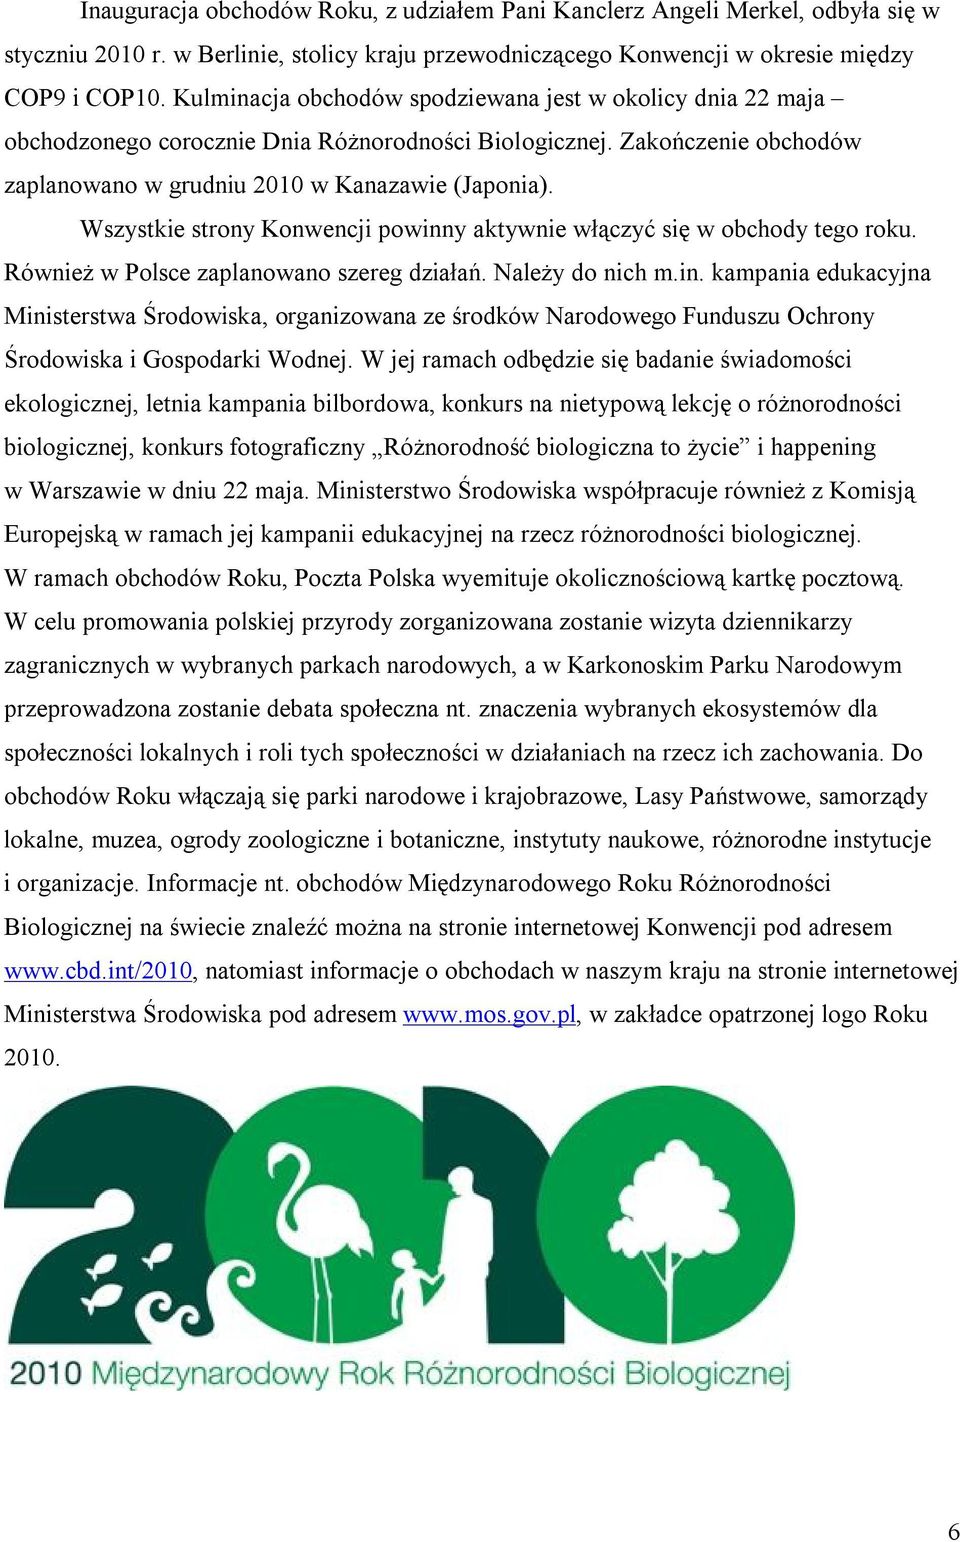 Wszystkie strony Konwencji powinny aktywnie włączyć się w obchody tego roku. Również w Polsce zaplanowano szereg działań. Należy do nich m.in. kampania edukacyjna Ministerstwa Środowiska, organizowana ze środków Narodowego Funduszu Ochrony Środowiska i Gospodarki Wodnej.